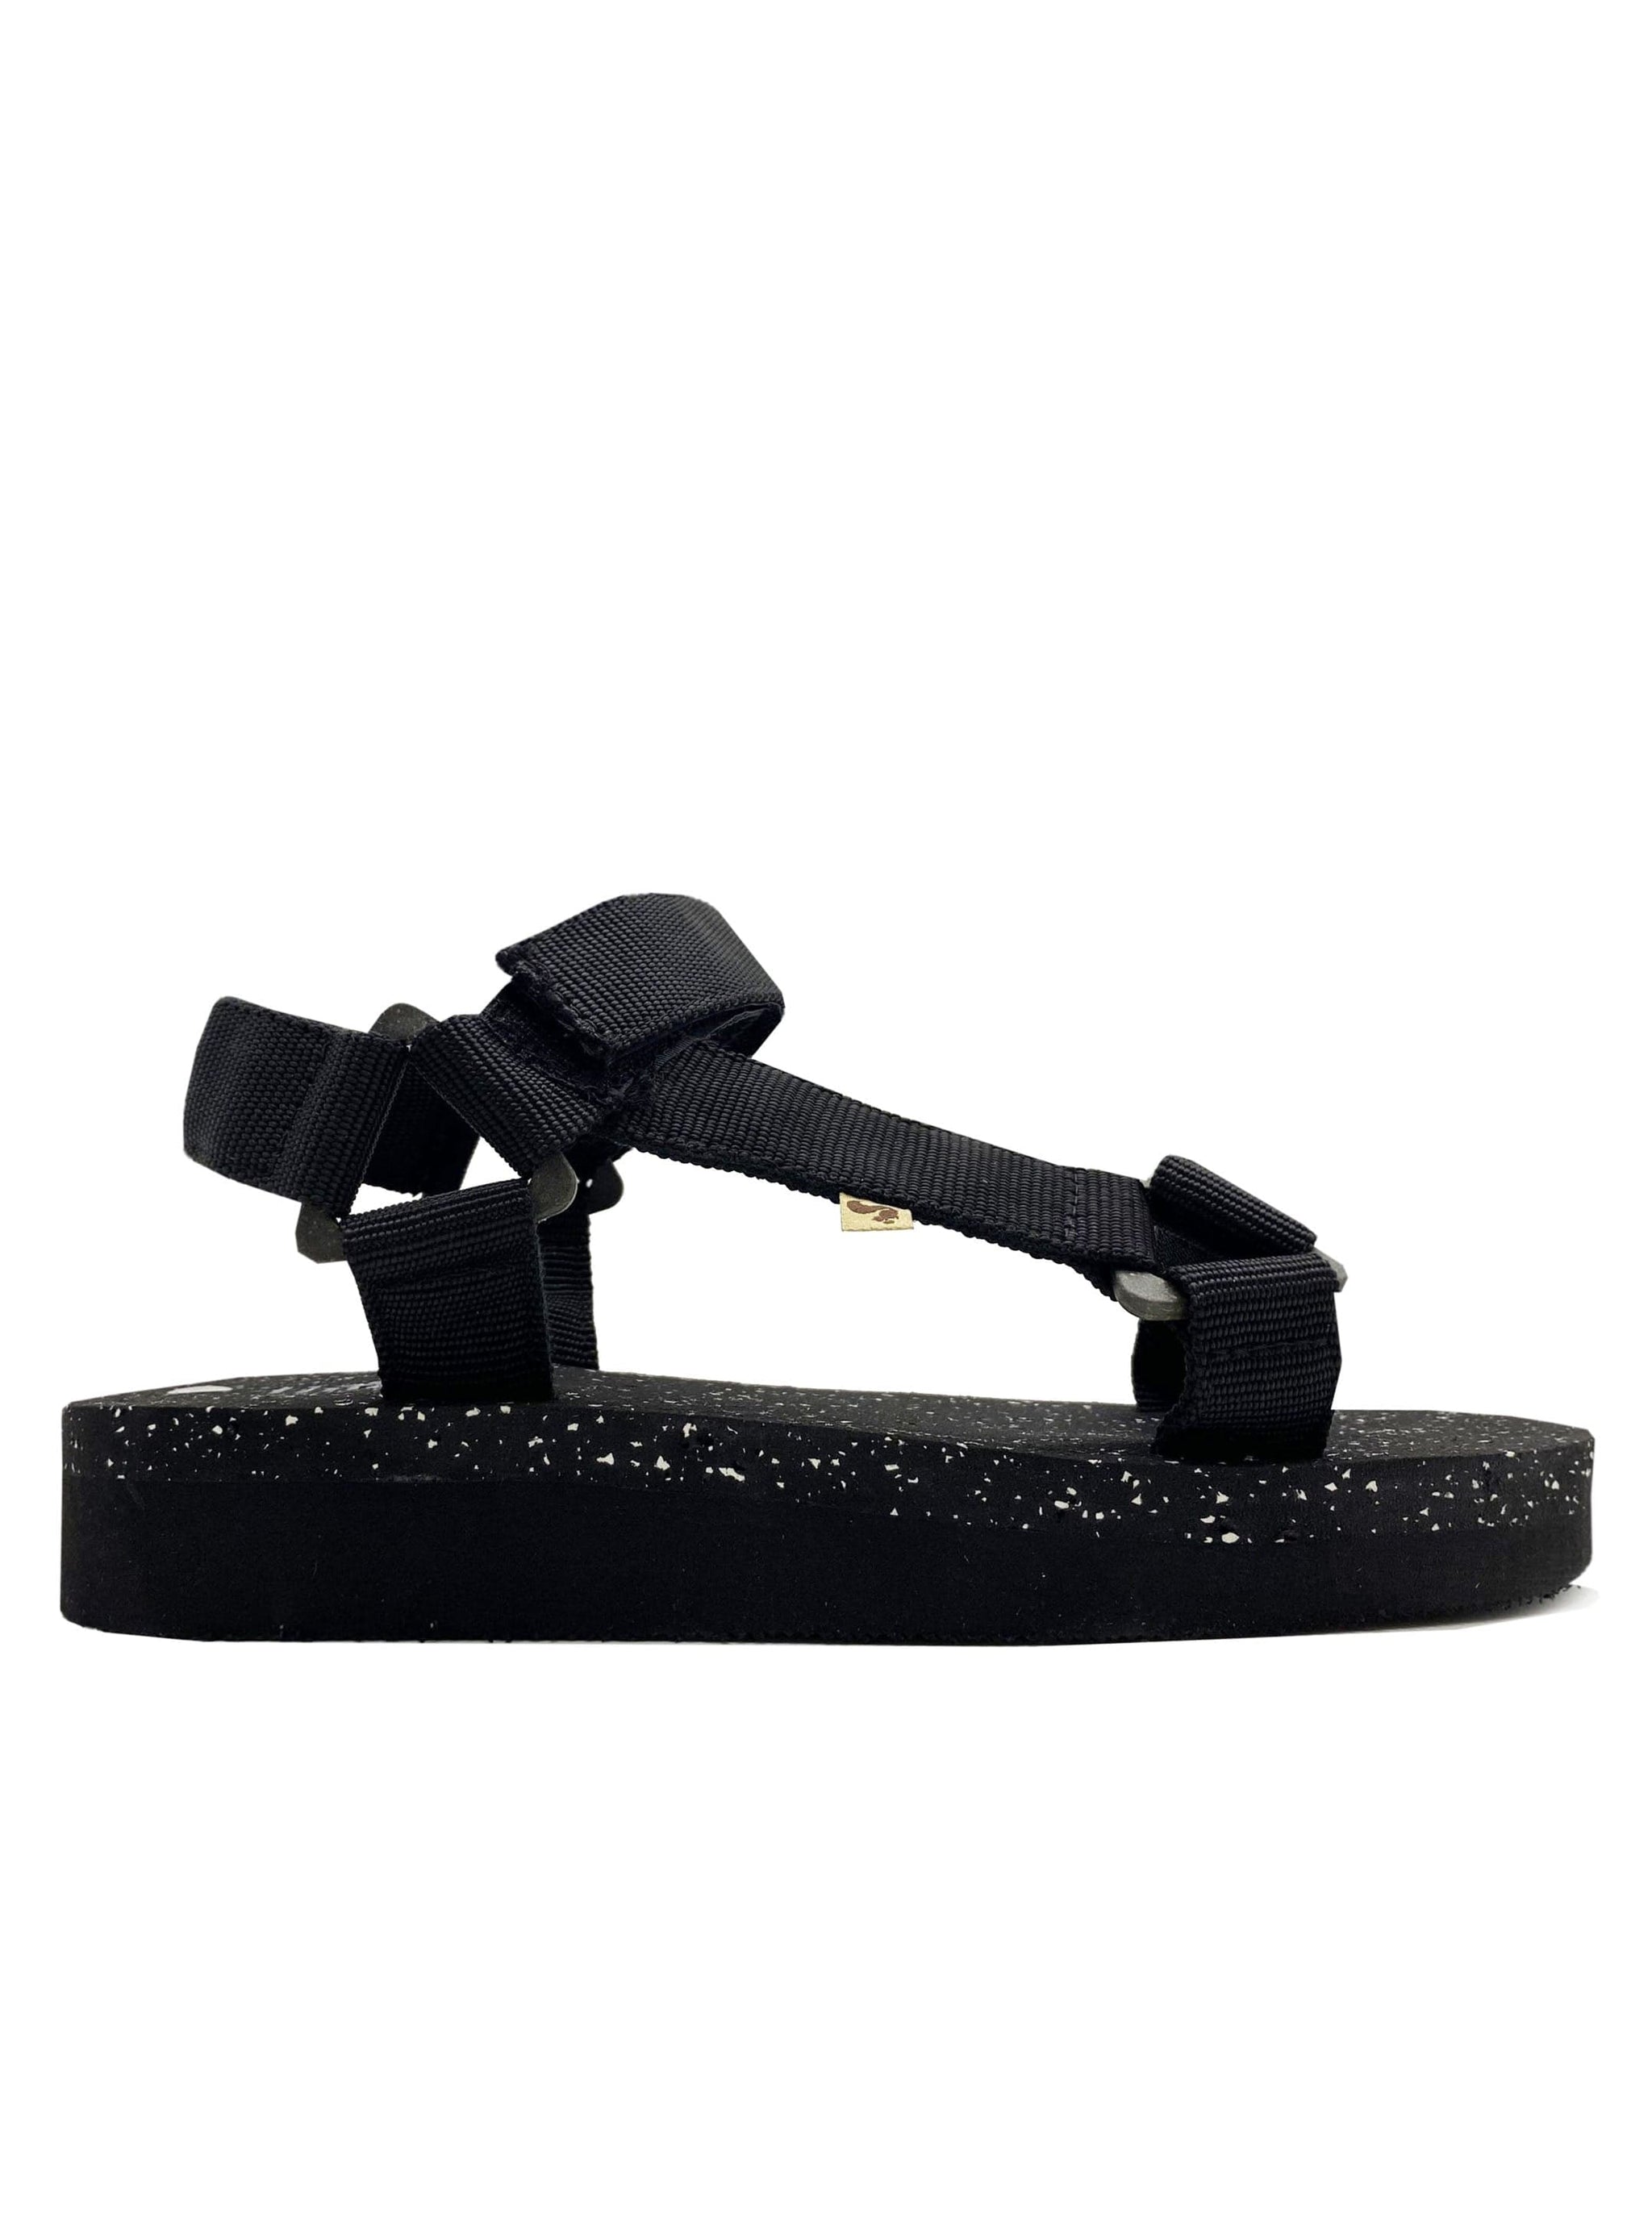 Zapatillas NAT 2 41 / negro / PES reciclado Eco Trek Vegan Black in Recycled EVA (W/X) moda sostenible moda ética